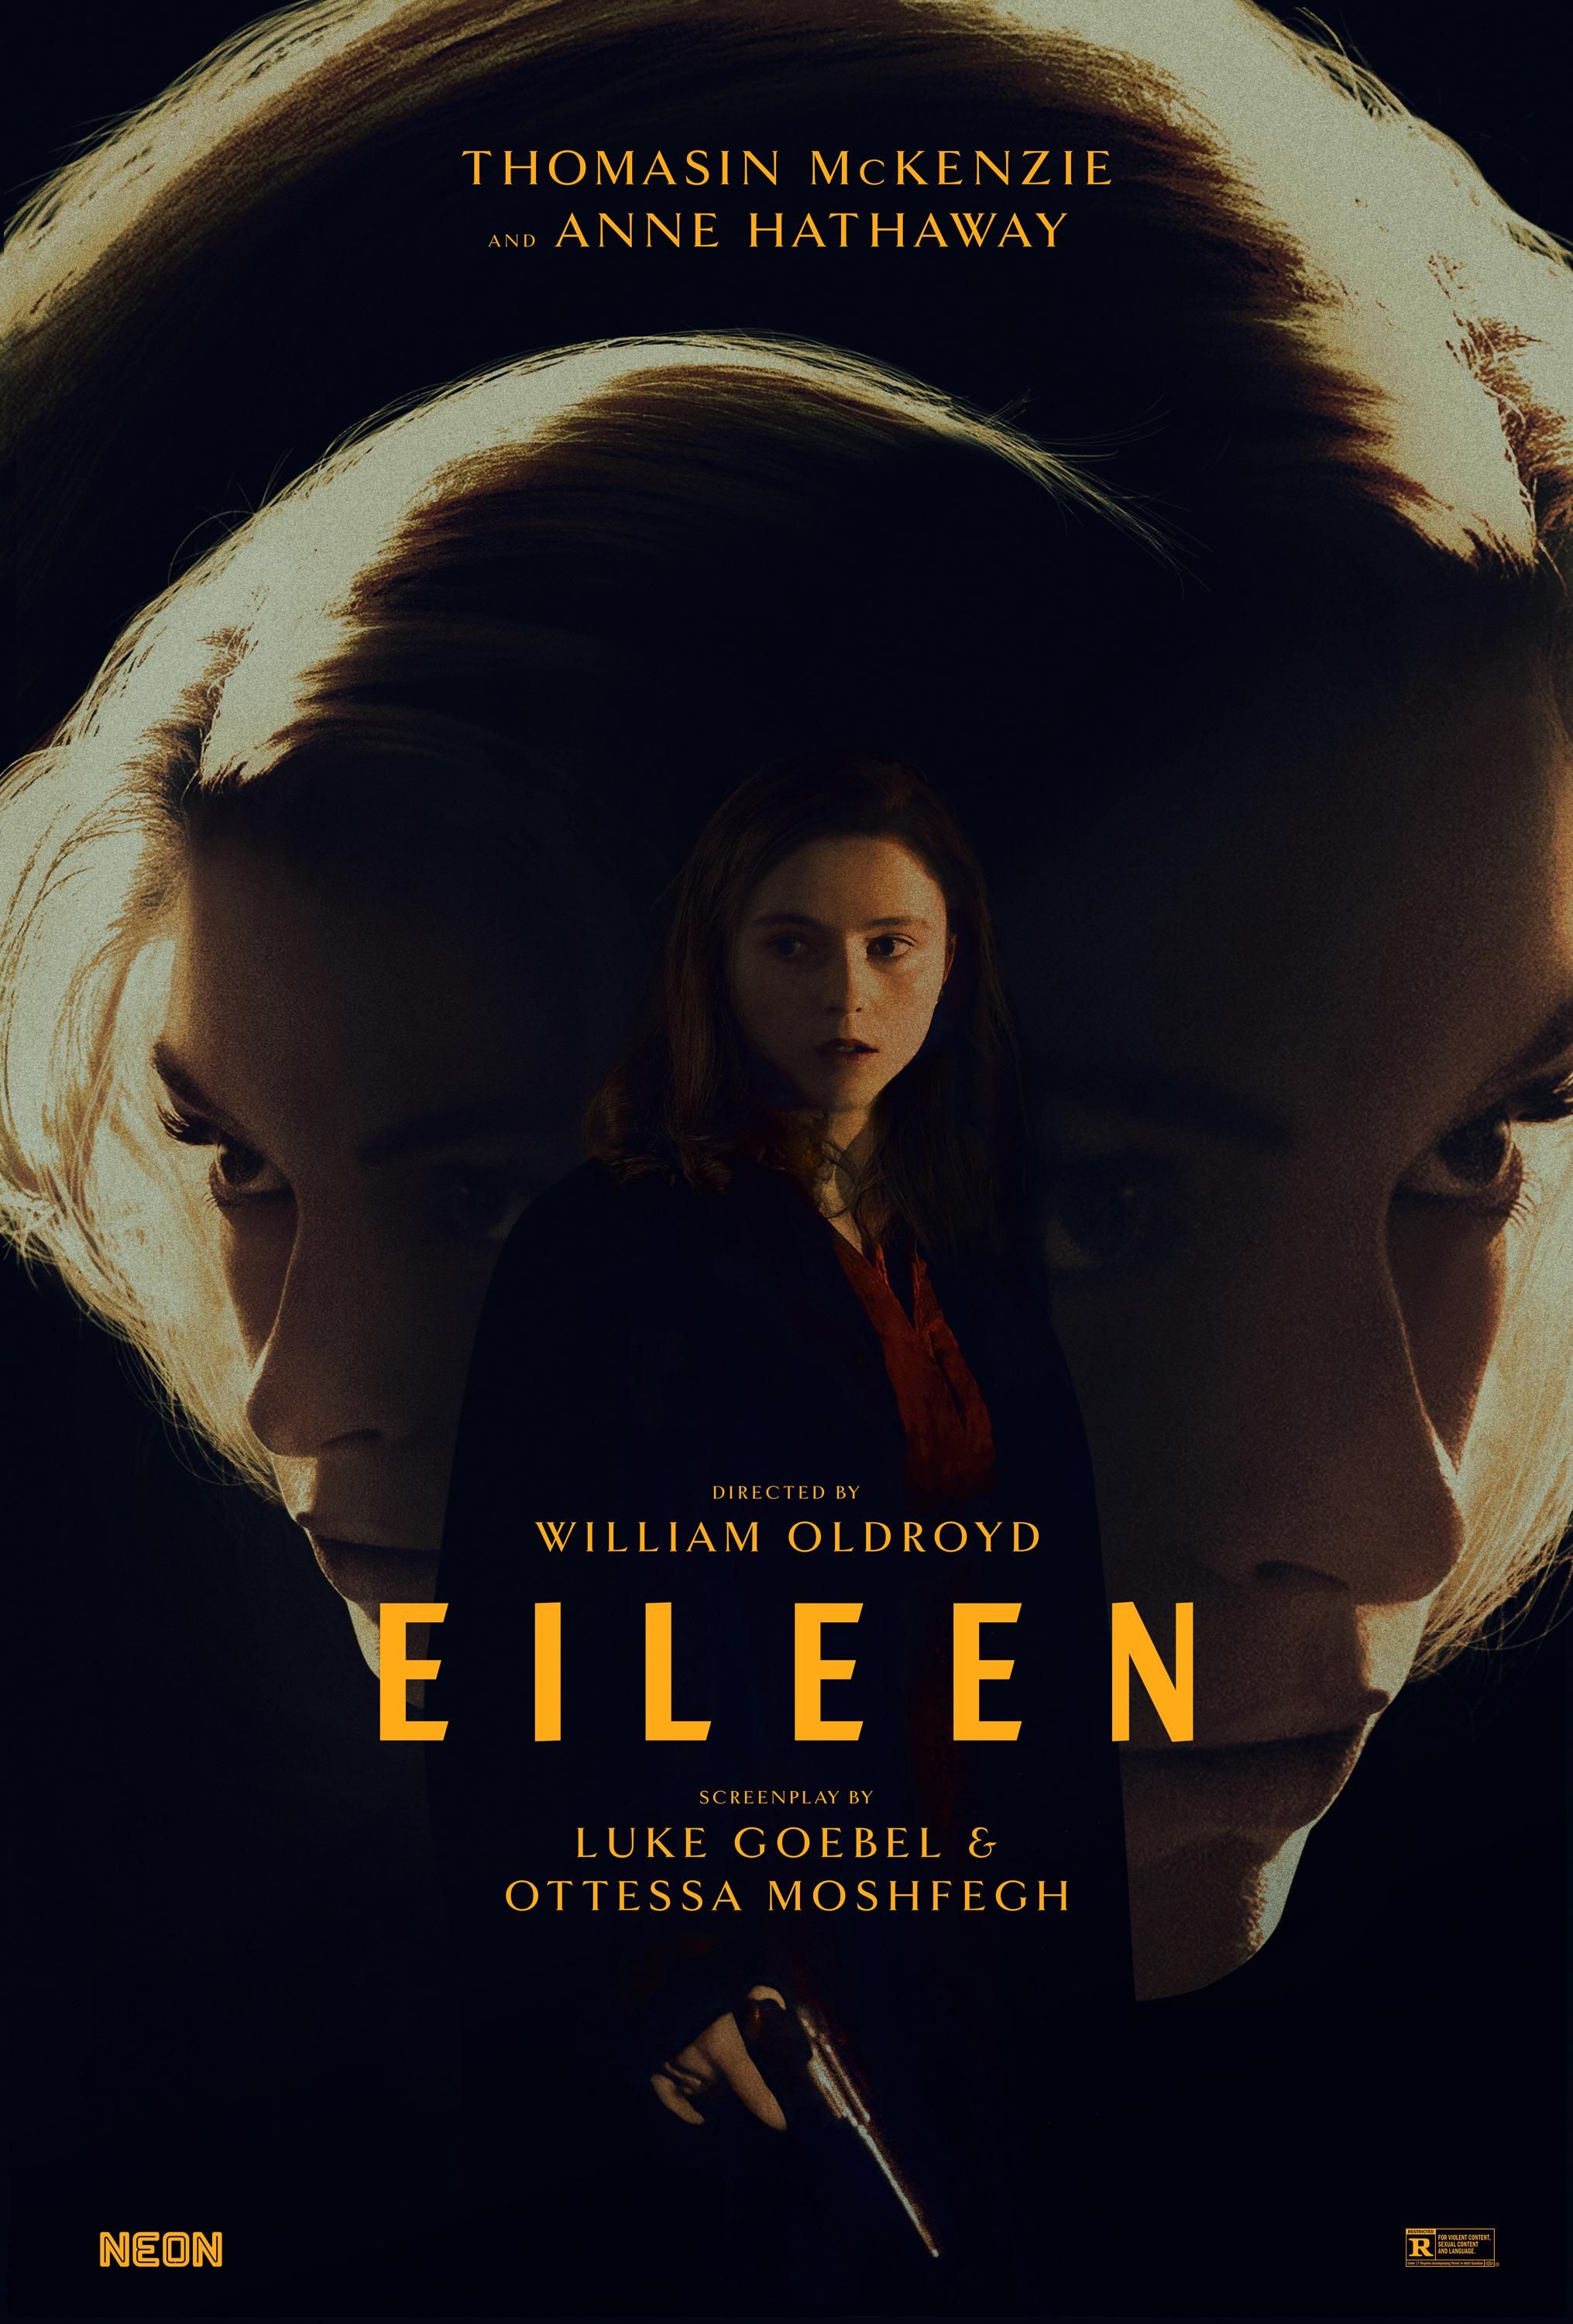 Eileen Review — Le film d’Anne Hathaway et Thomasin McKenzie défie les attentes